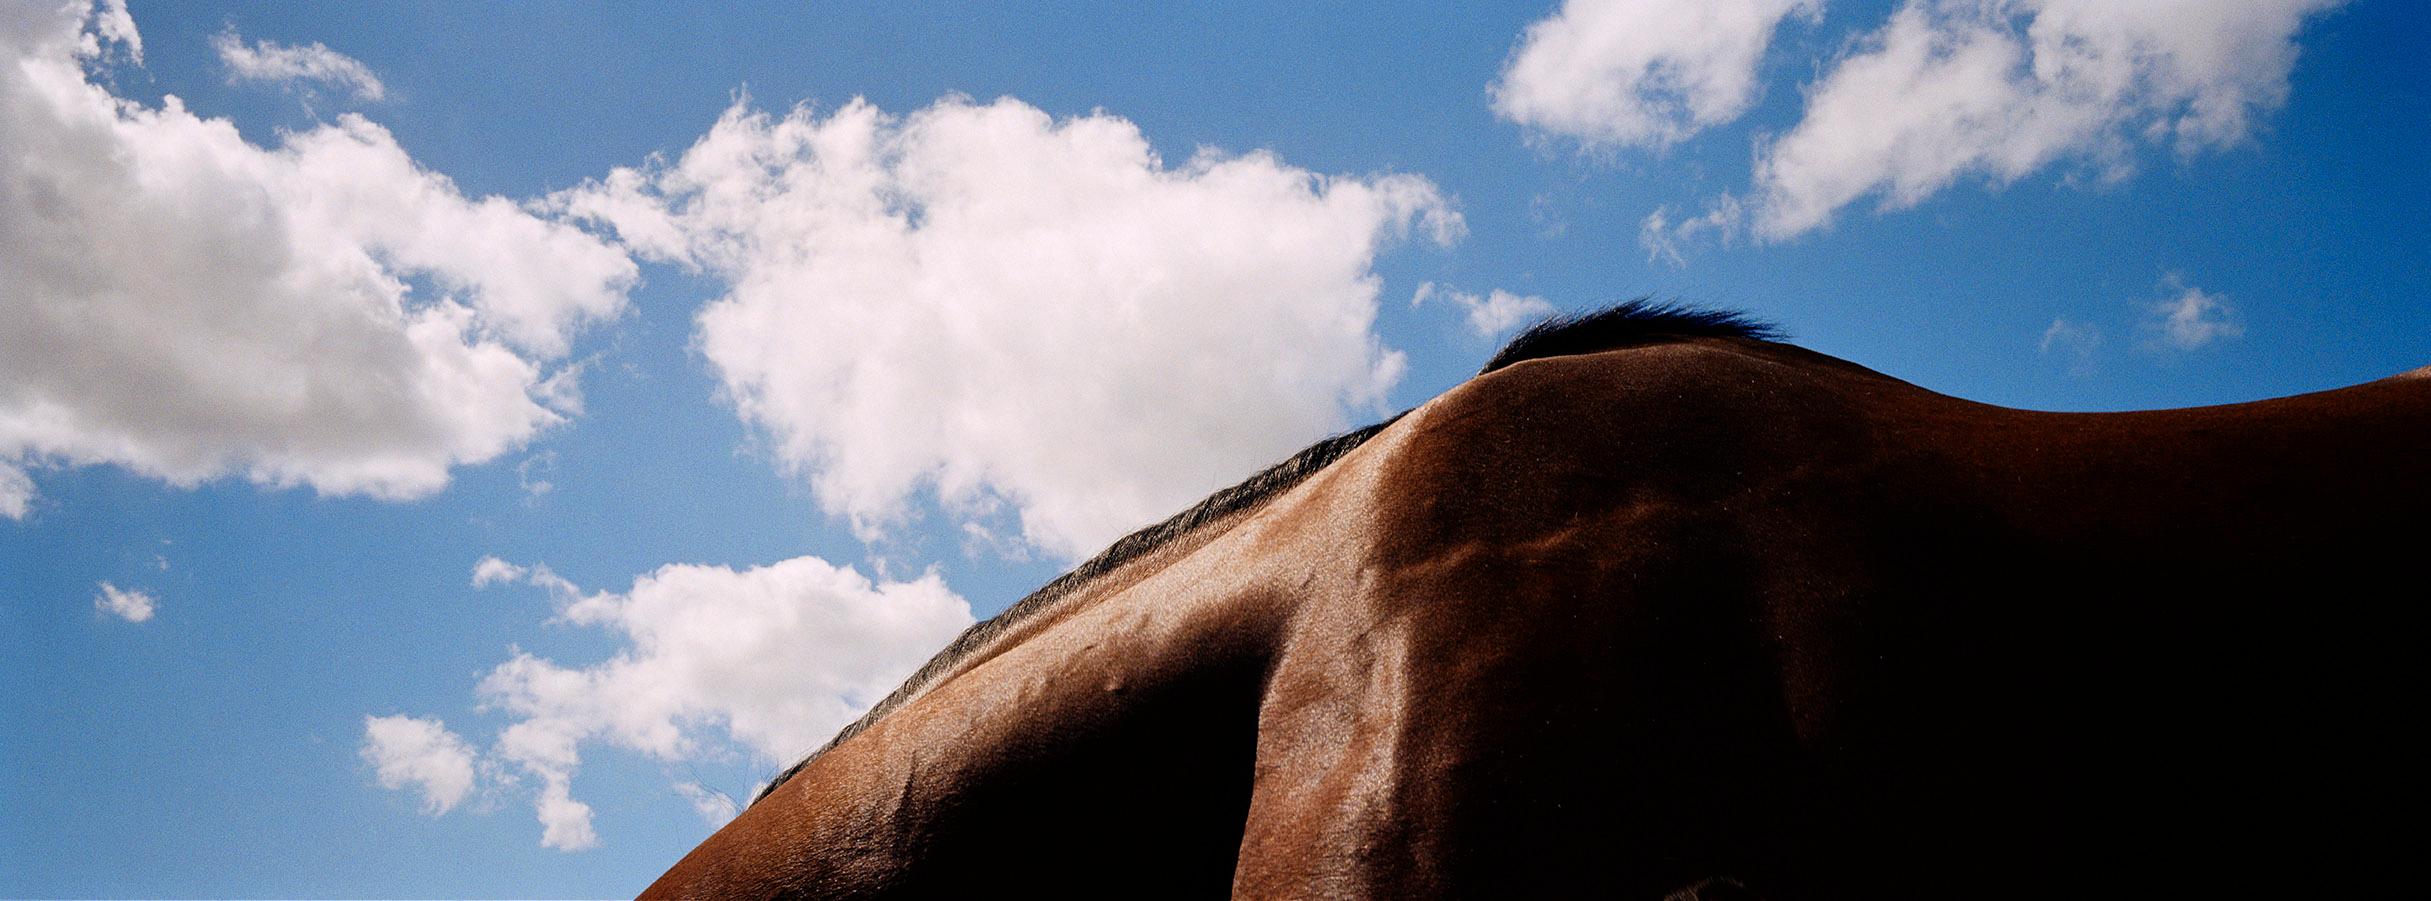 Animal Print John Reardon - Noverre - Paysage de chevaux I, ciel bleu et nuages, imprimé Panoramic, Australie 